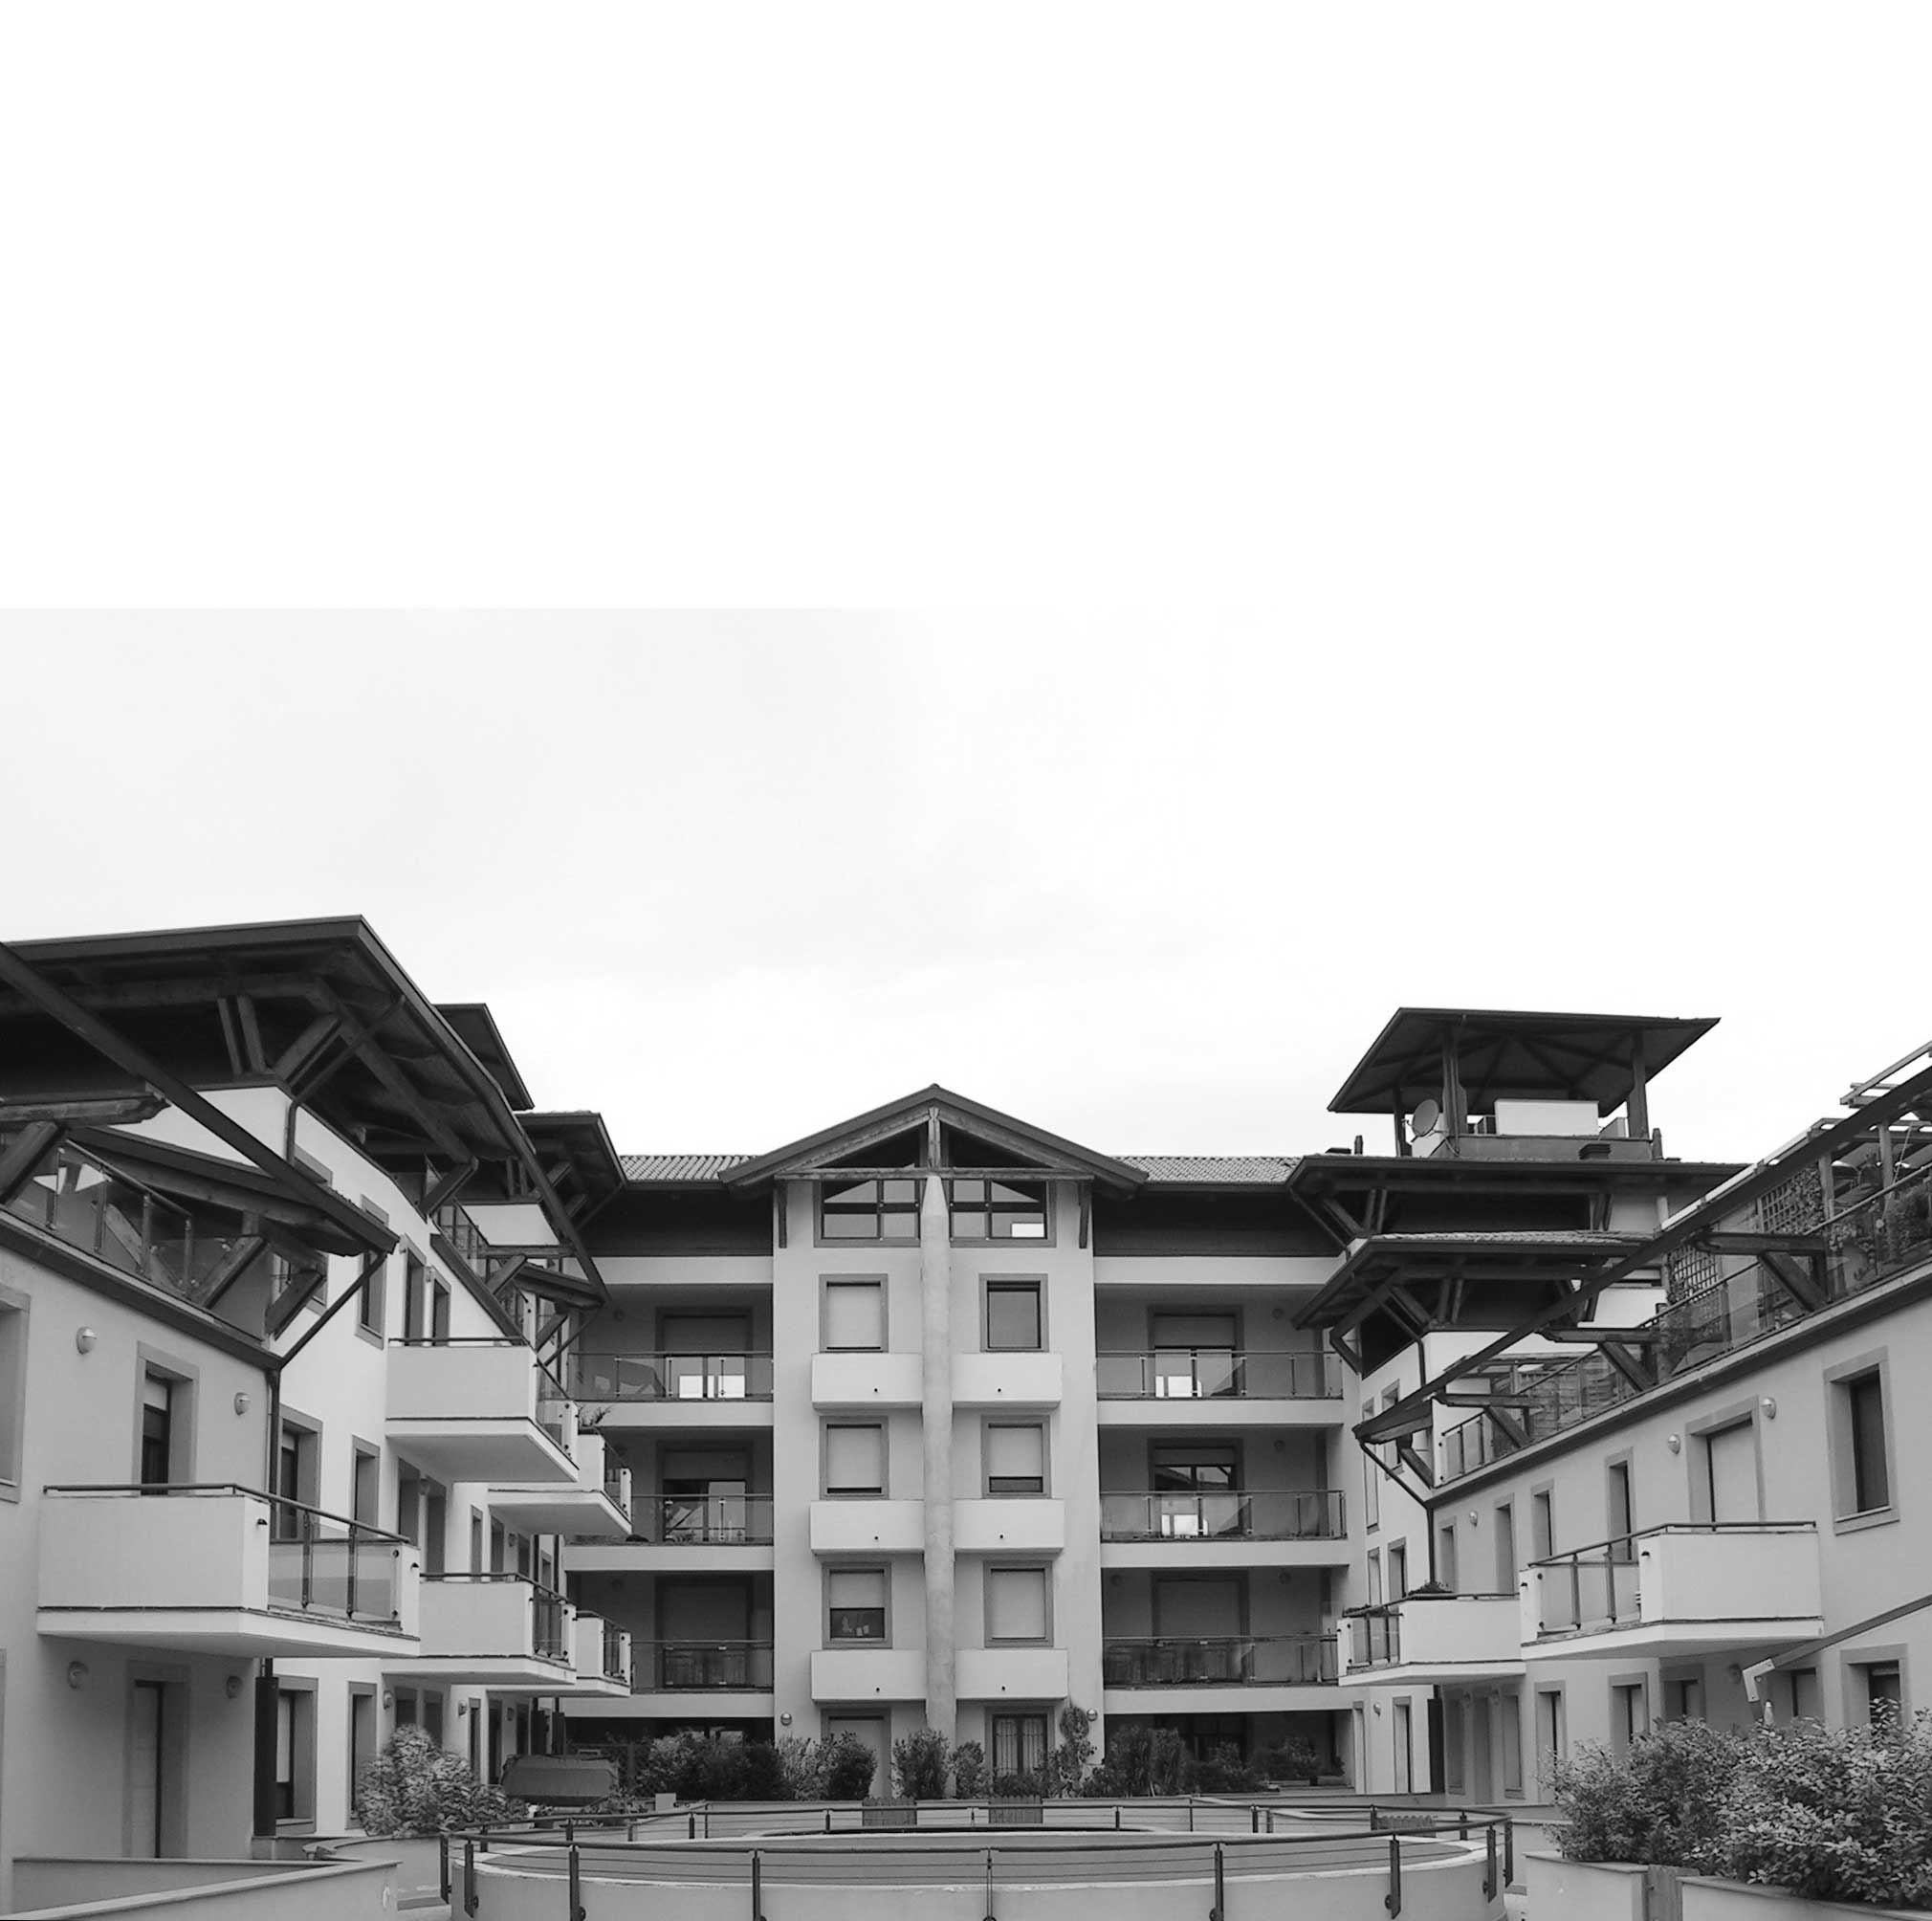 37 - Piano di Recupero ed edifici  UMI C7 e UMI H22 a destinazione residenziale e commerciale nel PdR dell’ex area Fiat, Firenze - Novoli - Vista esterna